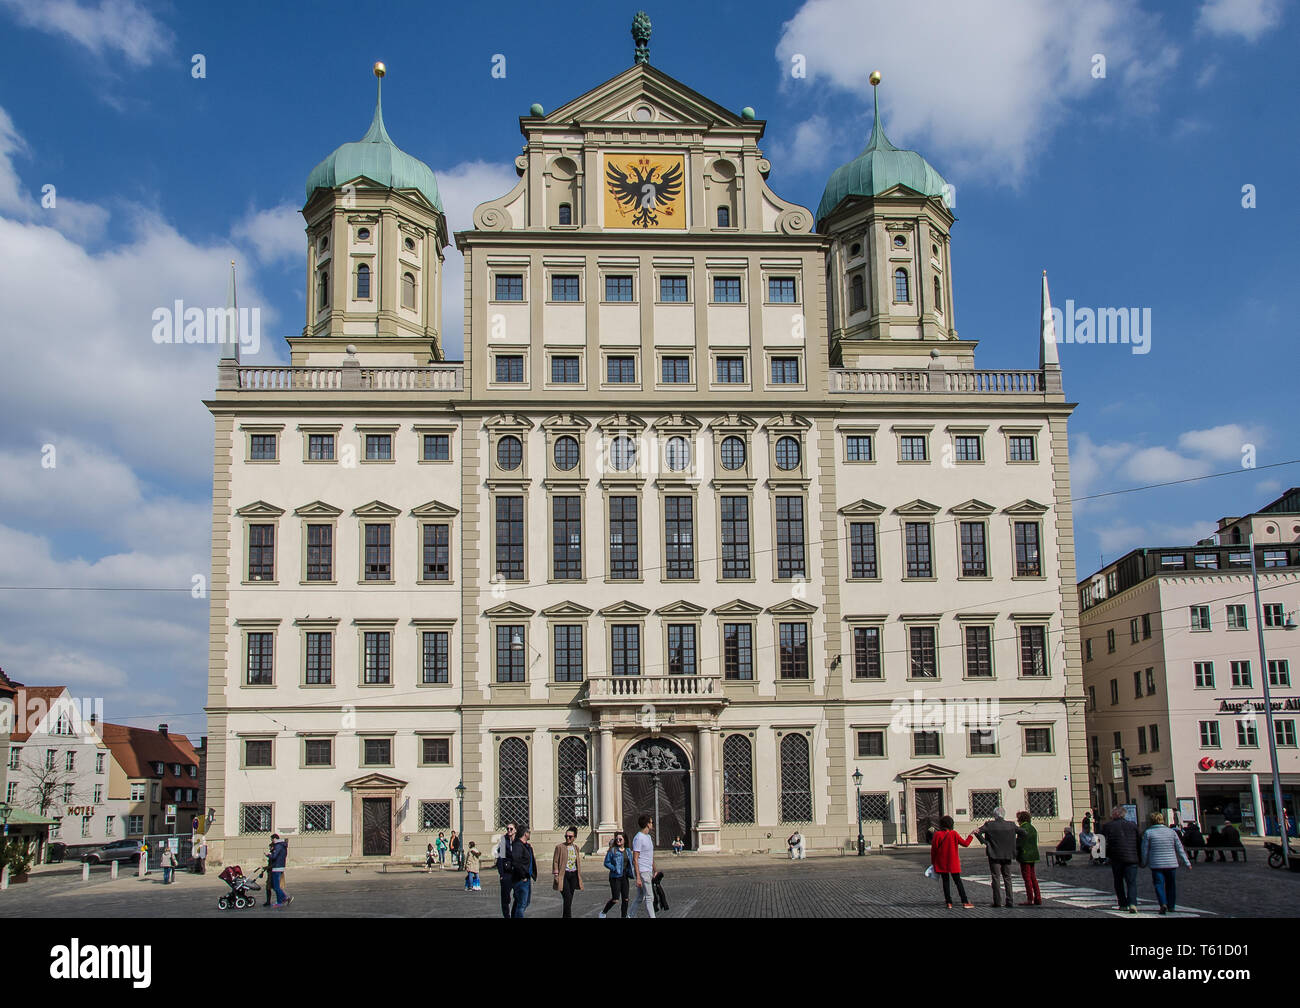 El ayuntamiento es el centro administrativo de Augsburgo y uno de los más importantes edificios seculares de estilo renacentista al norte de los Alpes. Foto de stock